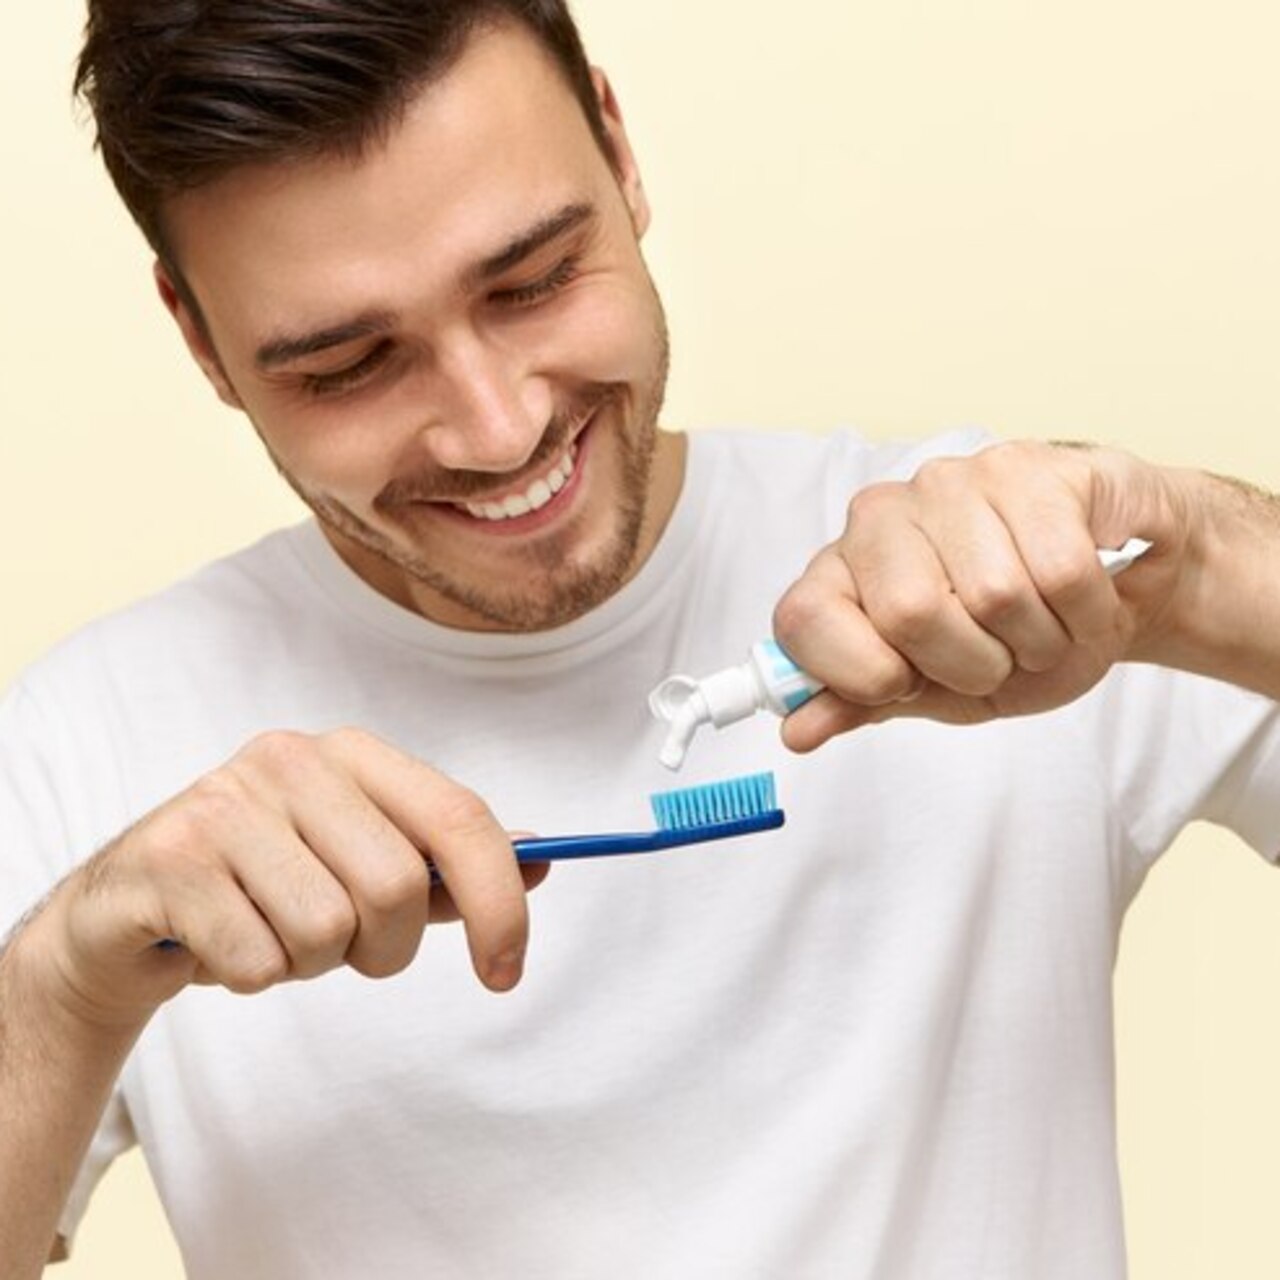 Diş fırçalamak orucu bozar mı?